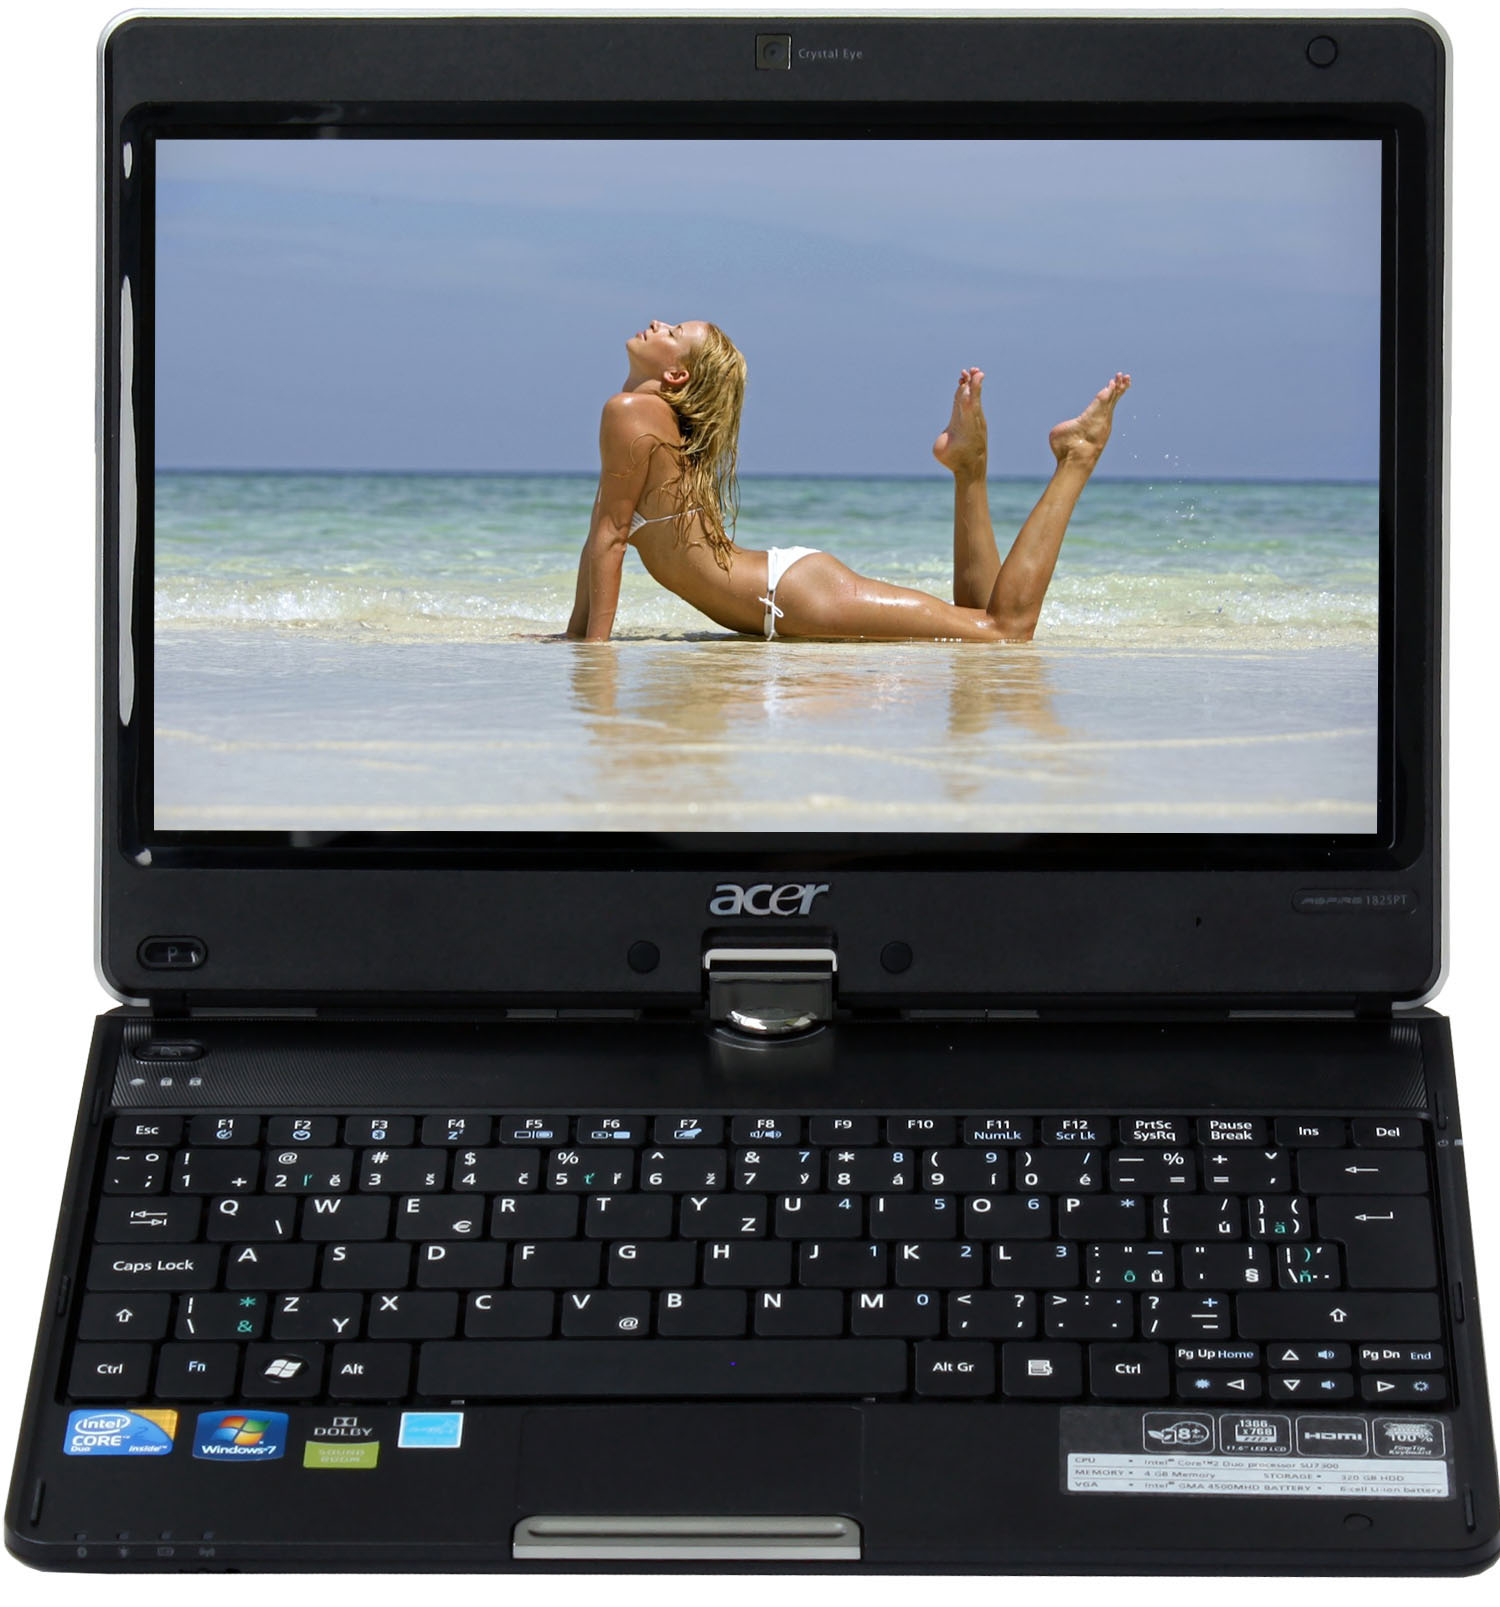 Acer Aspire 1825PT — dostupný tablet s odpovídající výbavou